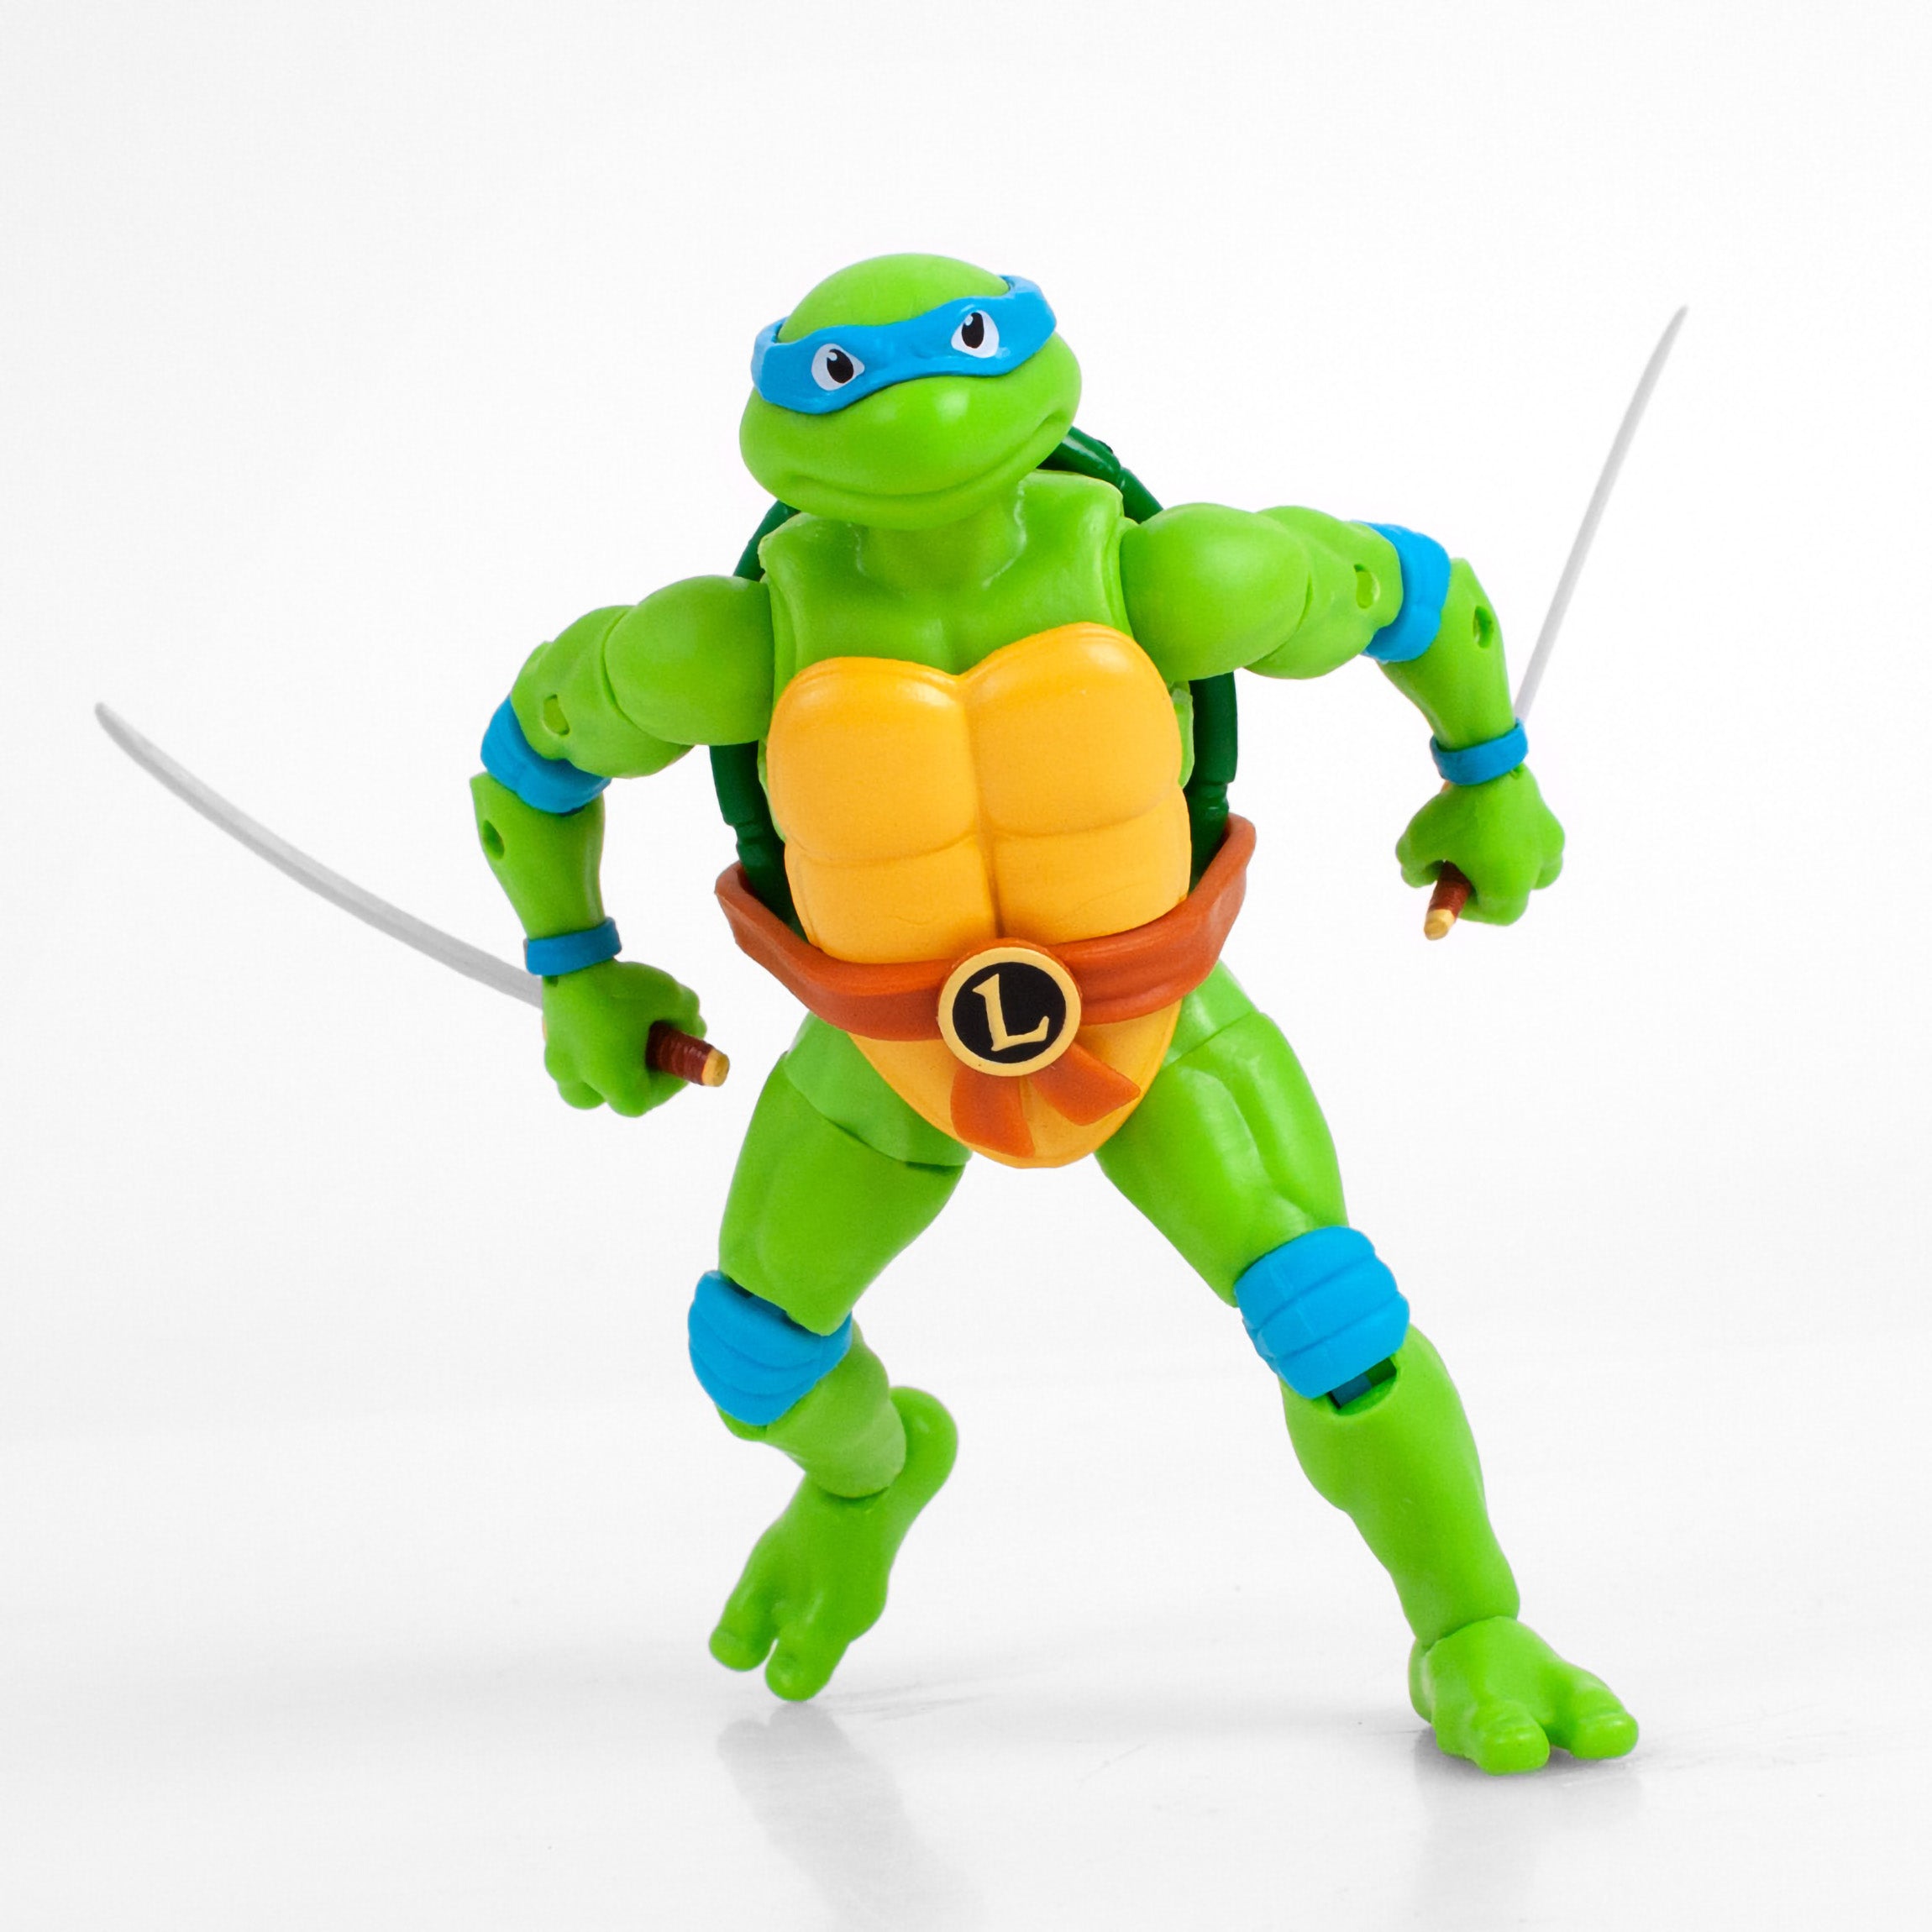 Teenage Mutant Ninja Turtles Movie Leo Action Figure